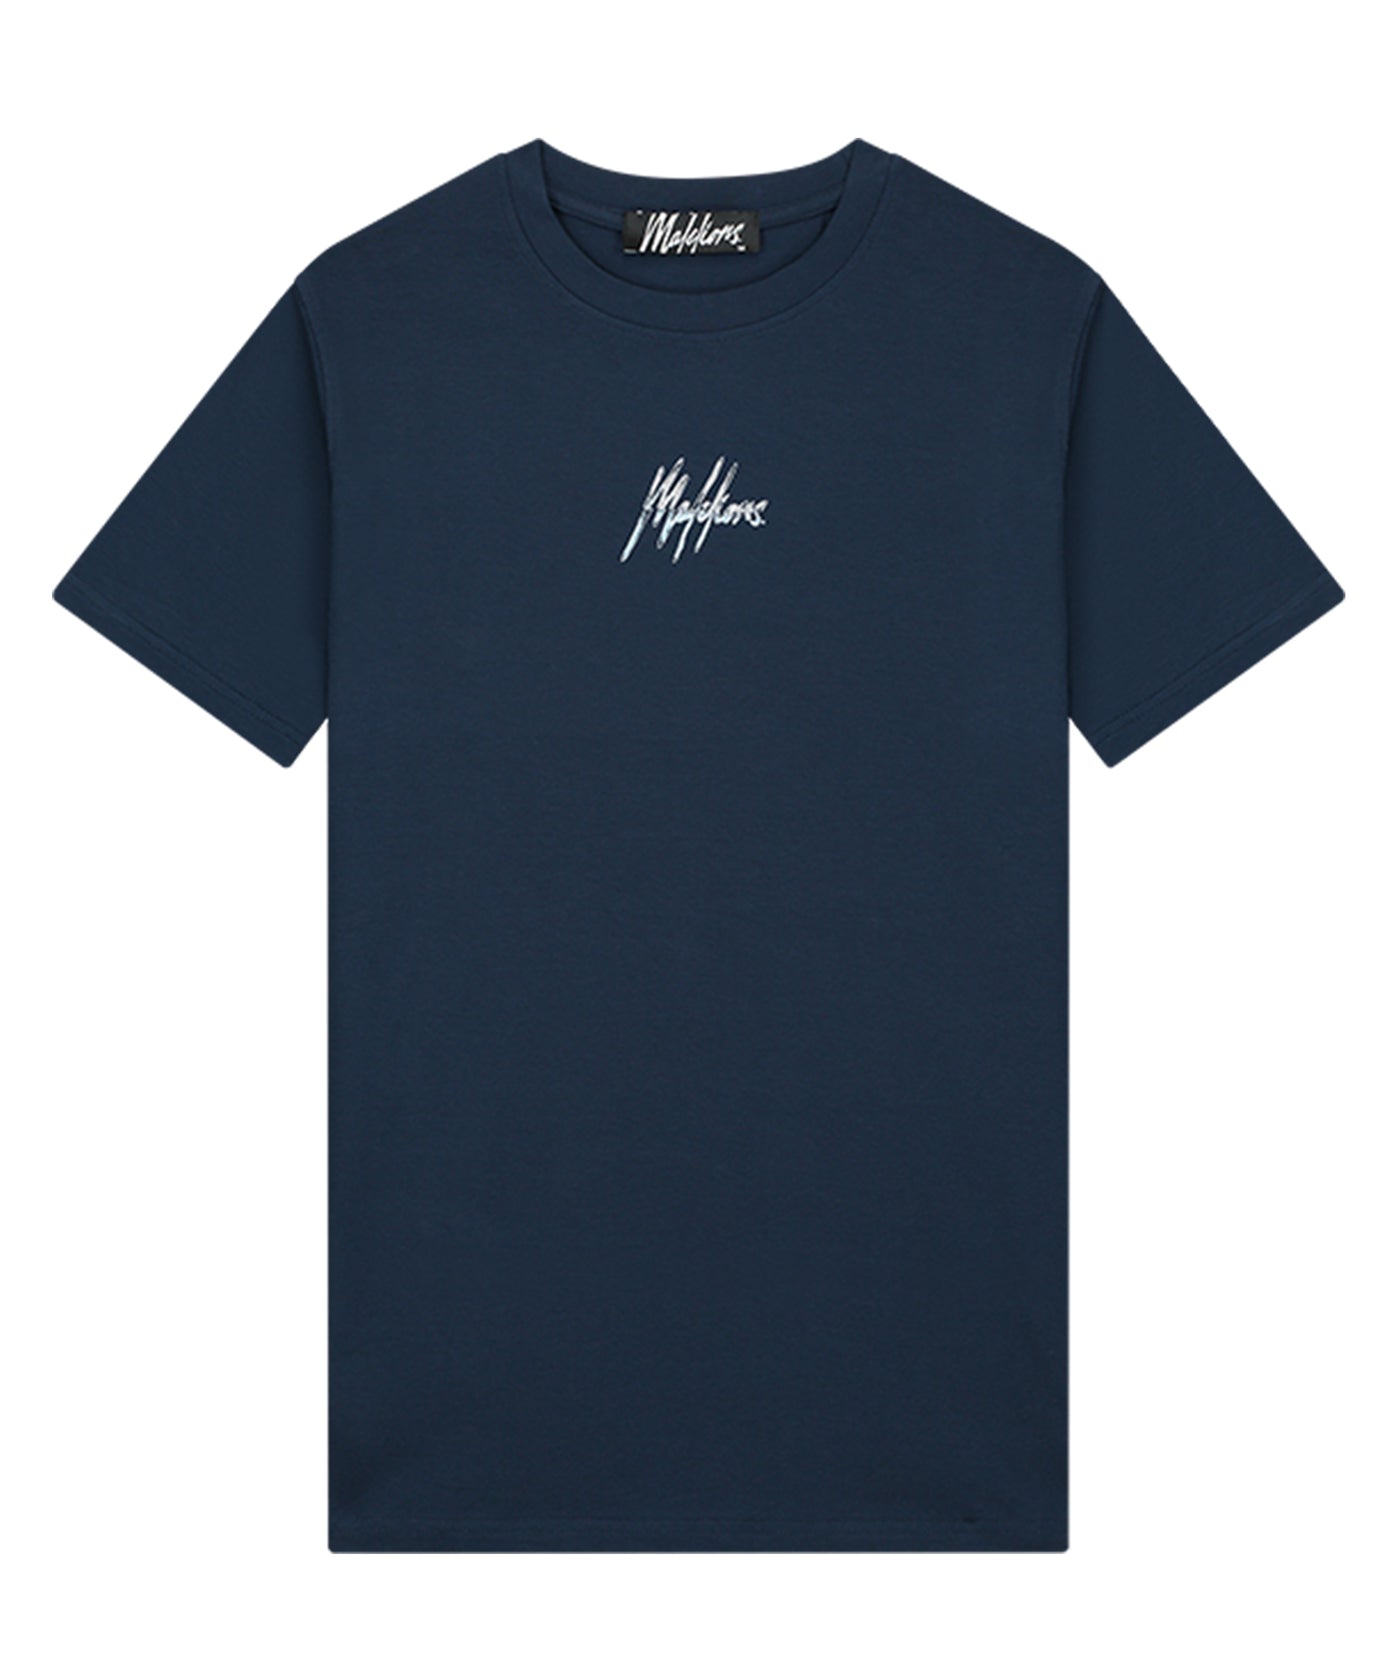 Malelions - Split 2.0 - T-shirt - Navy/beige